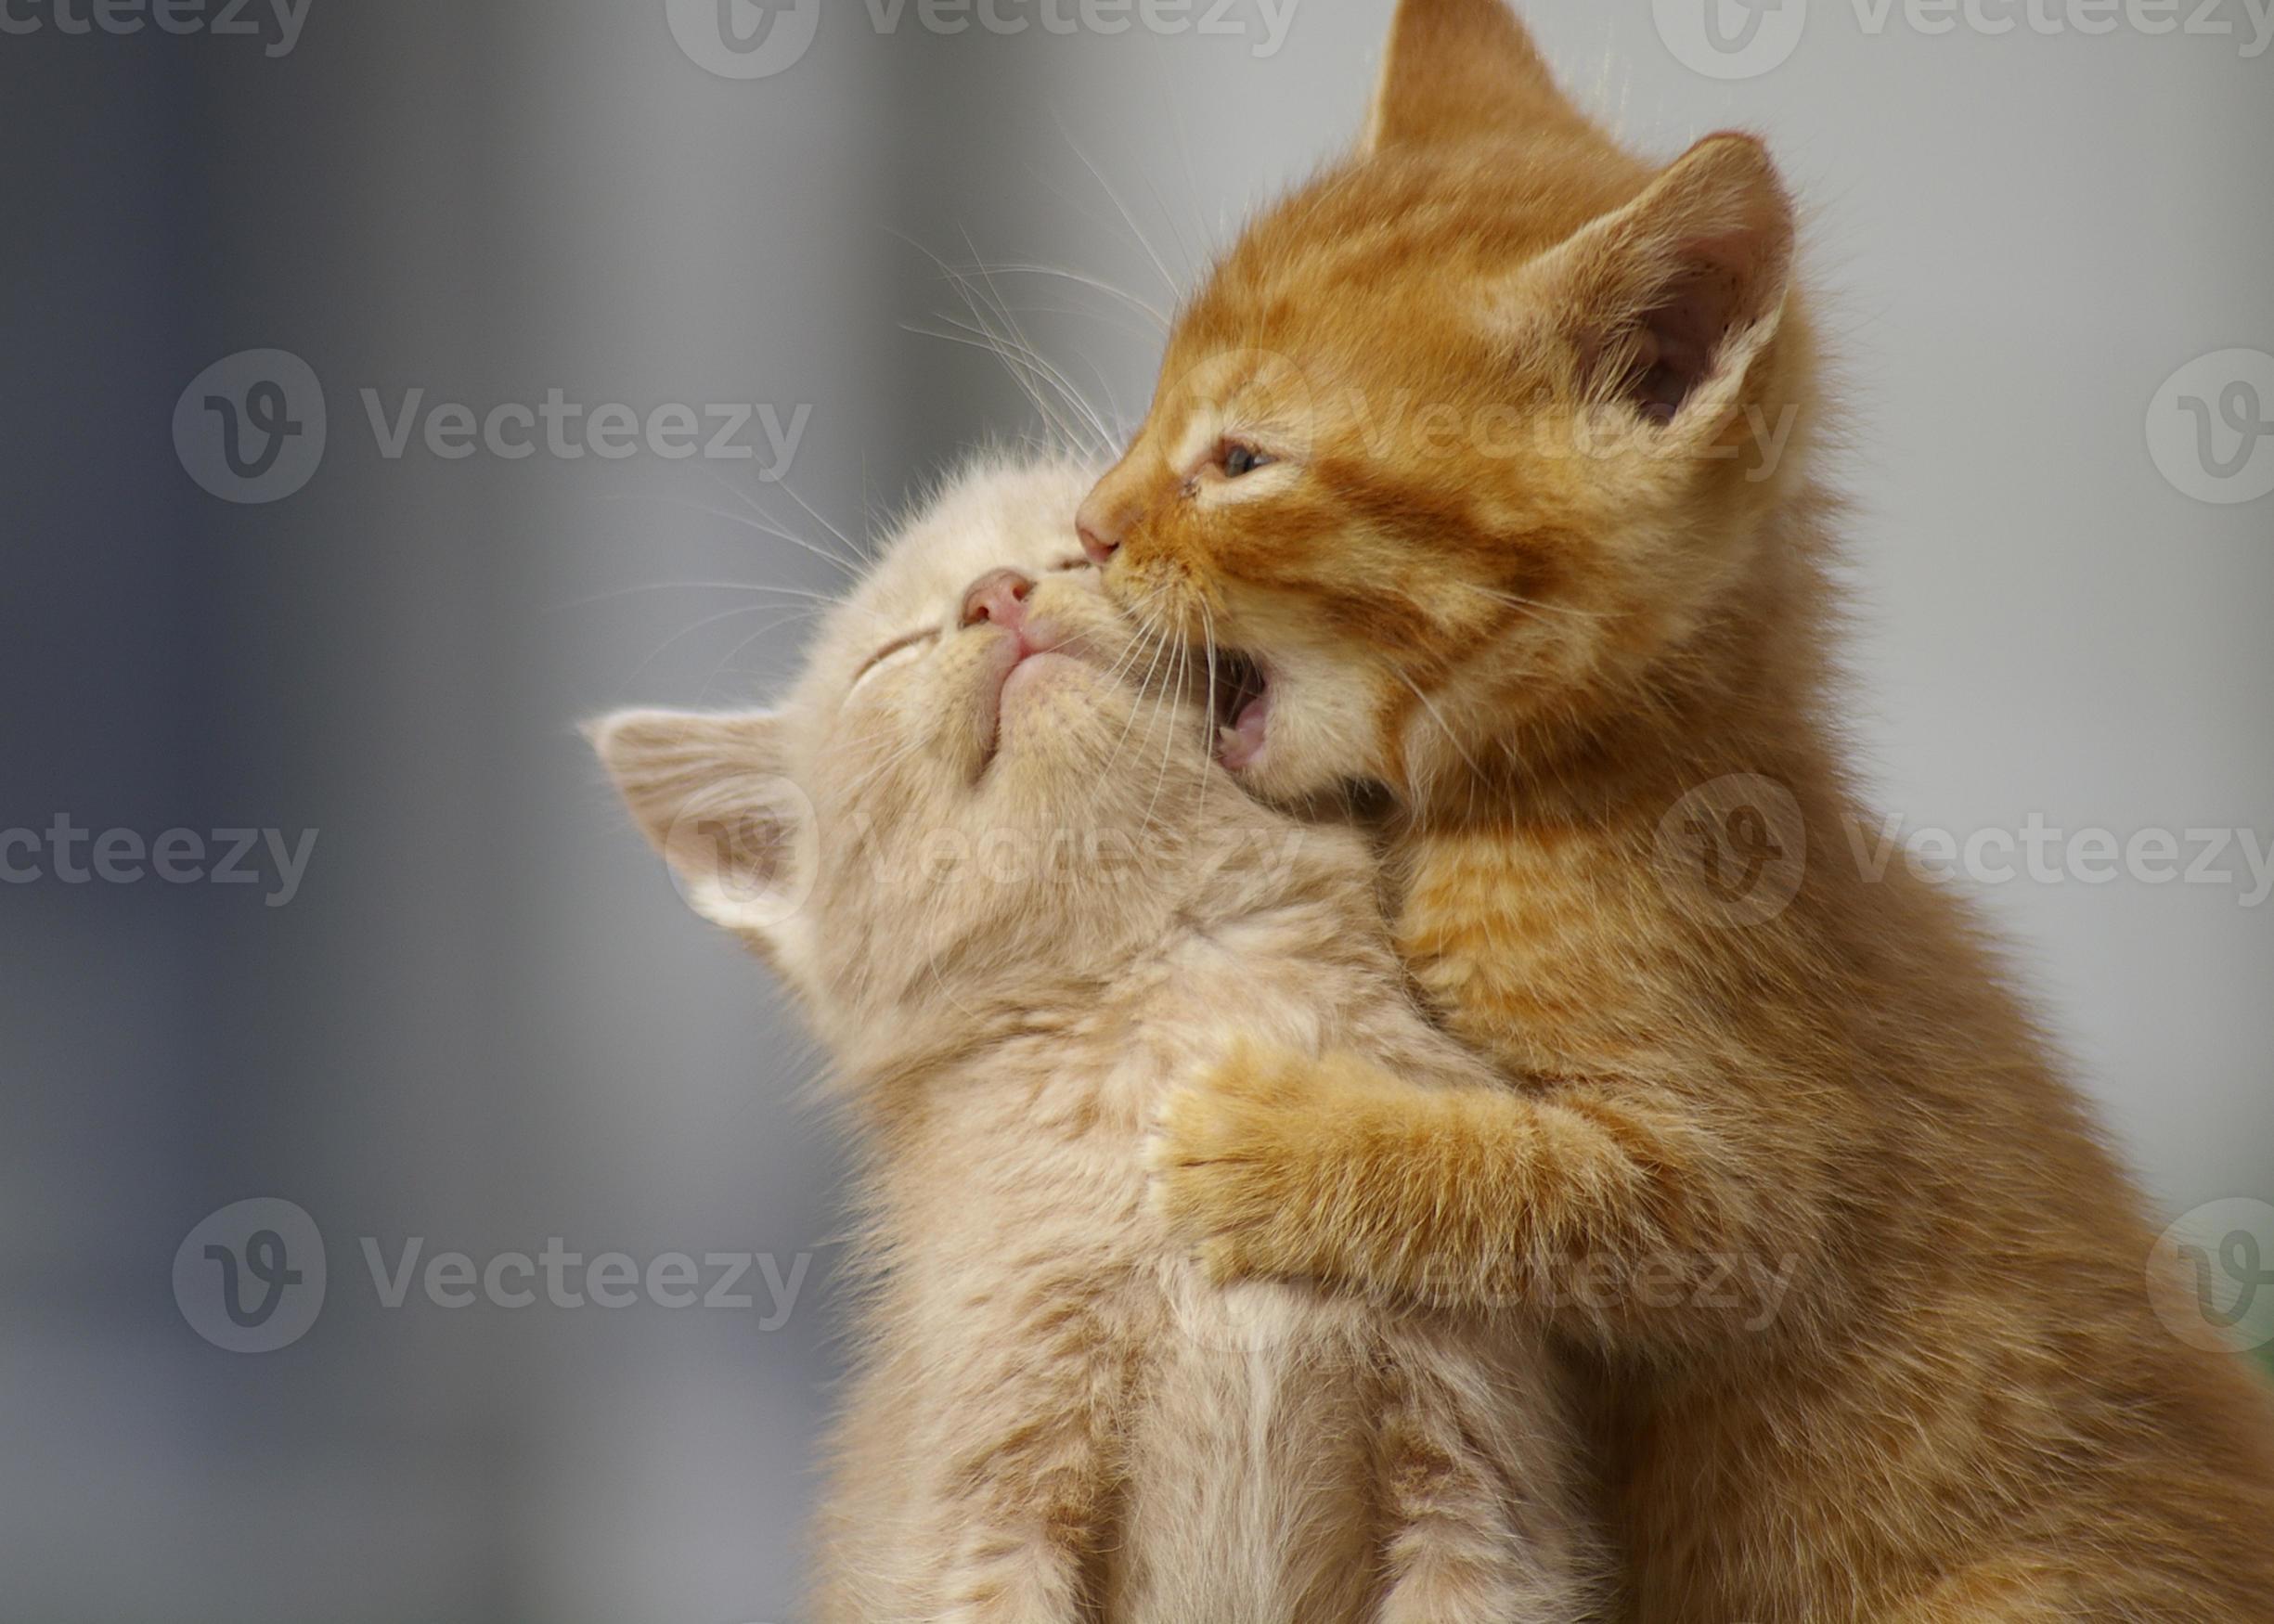 Speciaal Ritmisch doorgaan met kittens spelen. twee jonge katten buiten spelen. 838013 stockfoto bij  Vecteezy